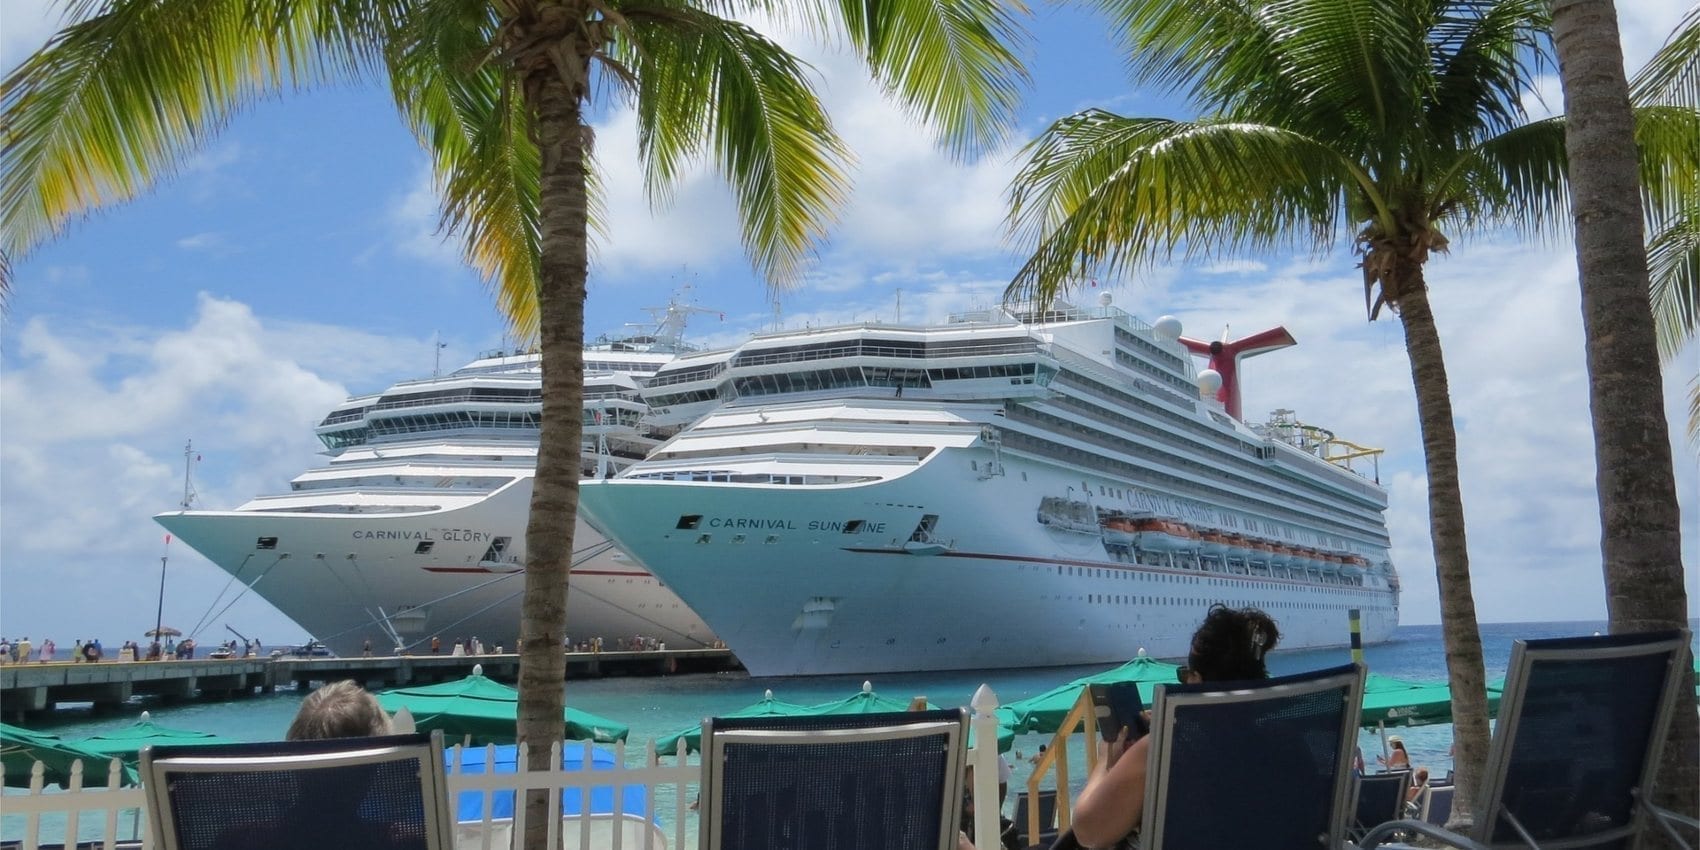 Fantastisch Verbeelding Verwachting Goedkope cruise reizen deals & aanbiedingen 2019 | TravelClown